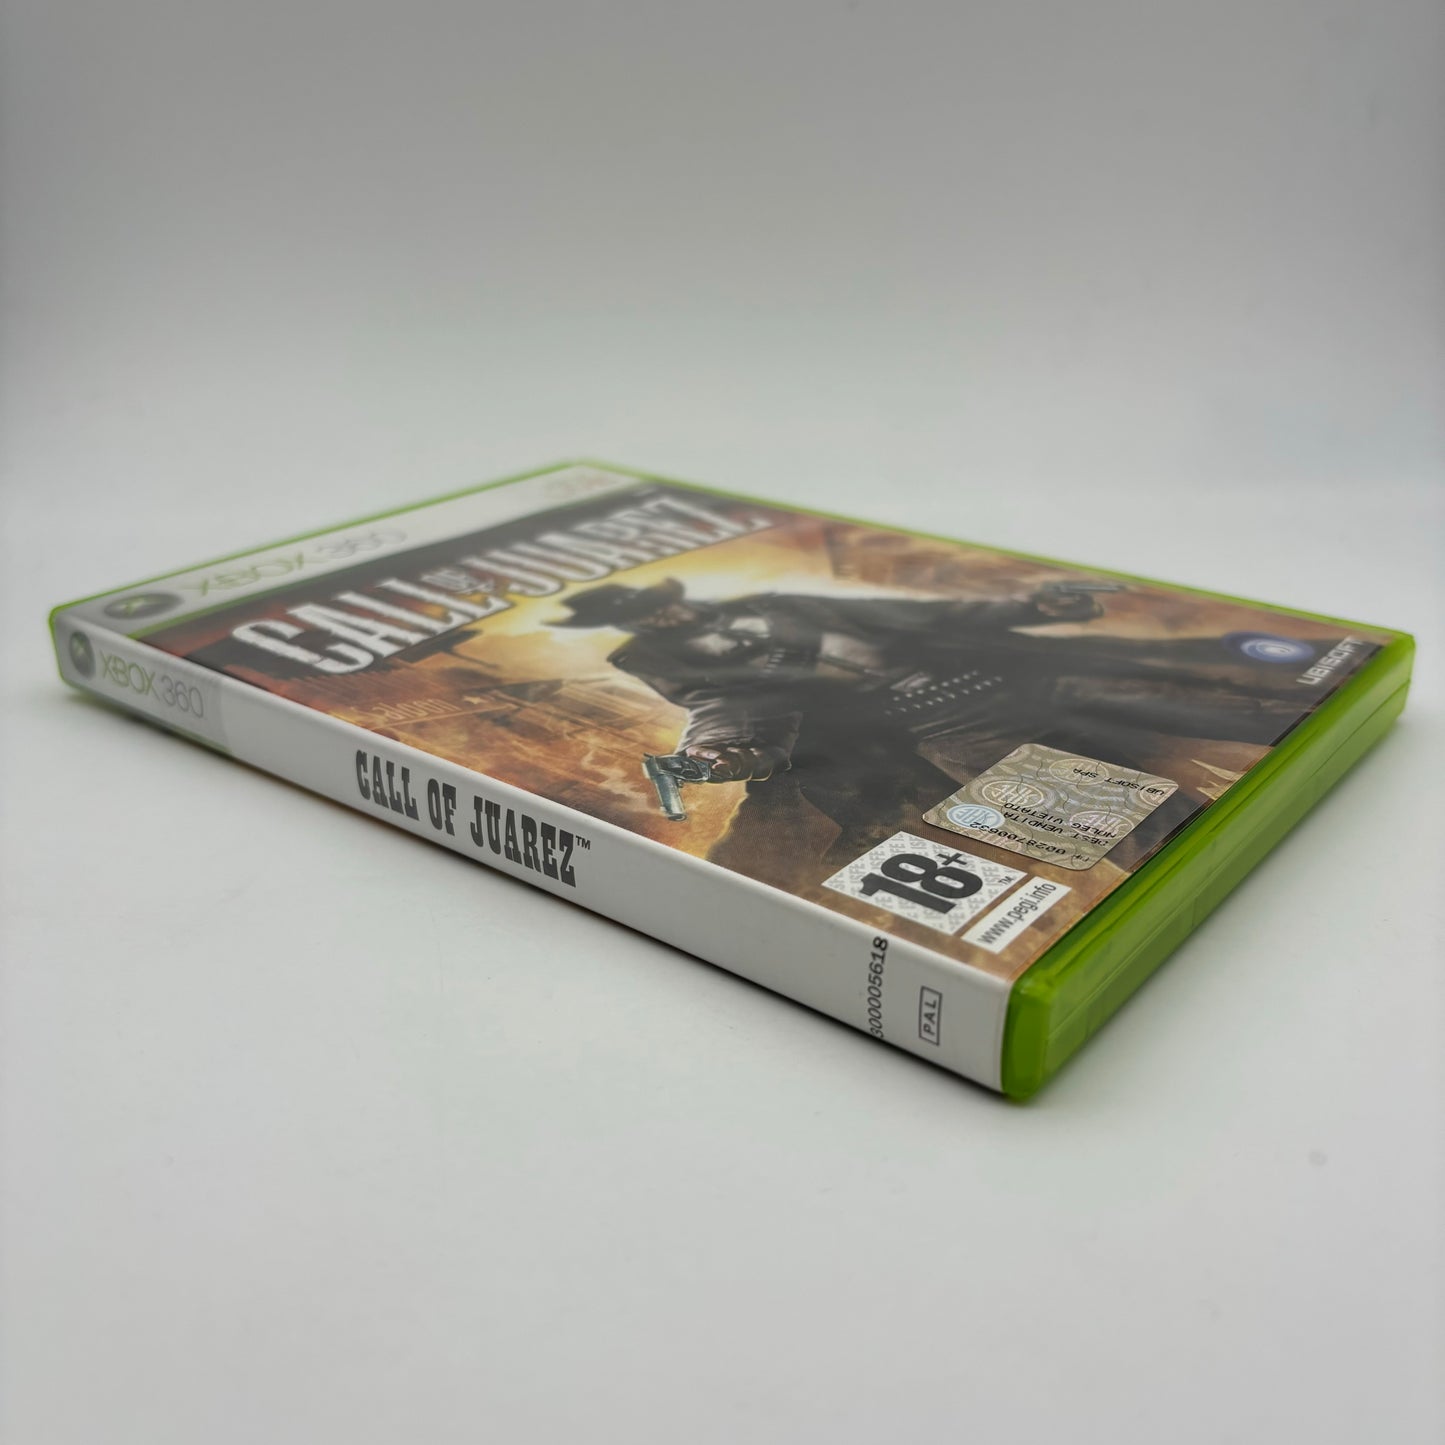 Call of Juarez Xbox 360 Pal ITA (USATO)